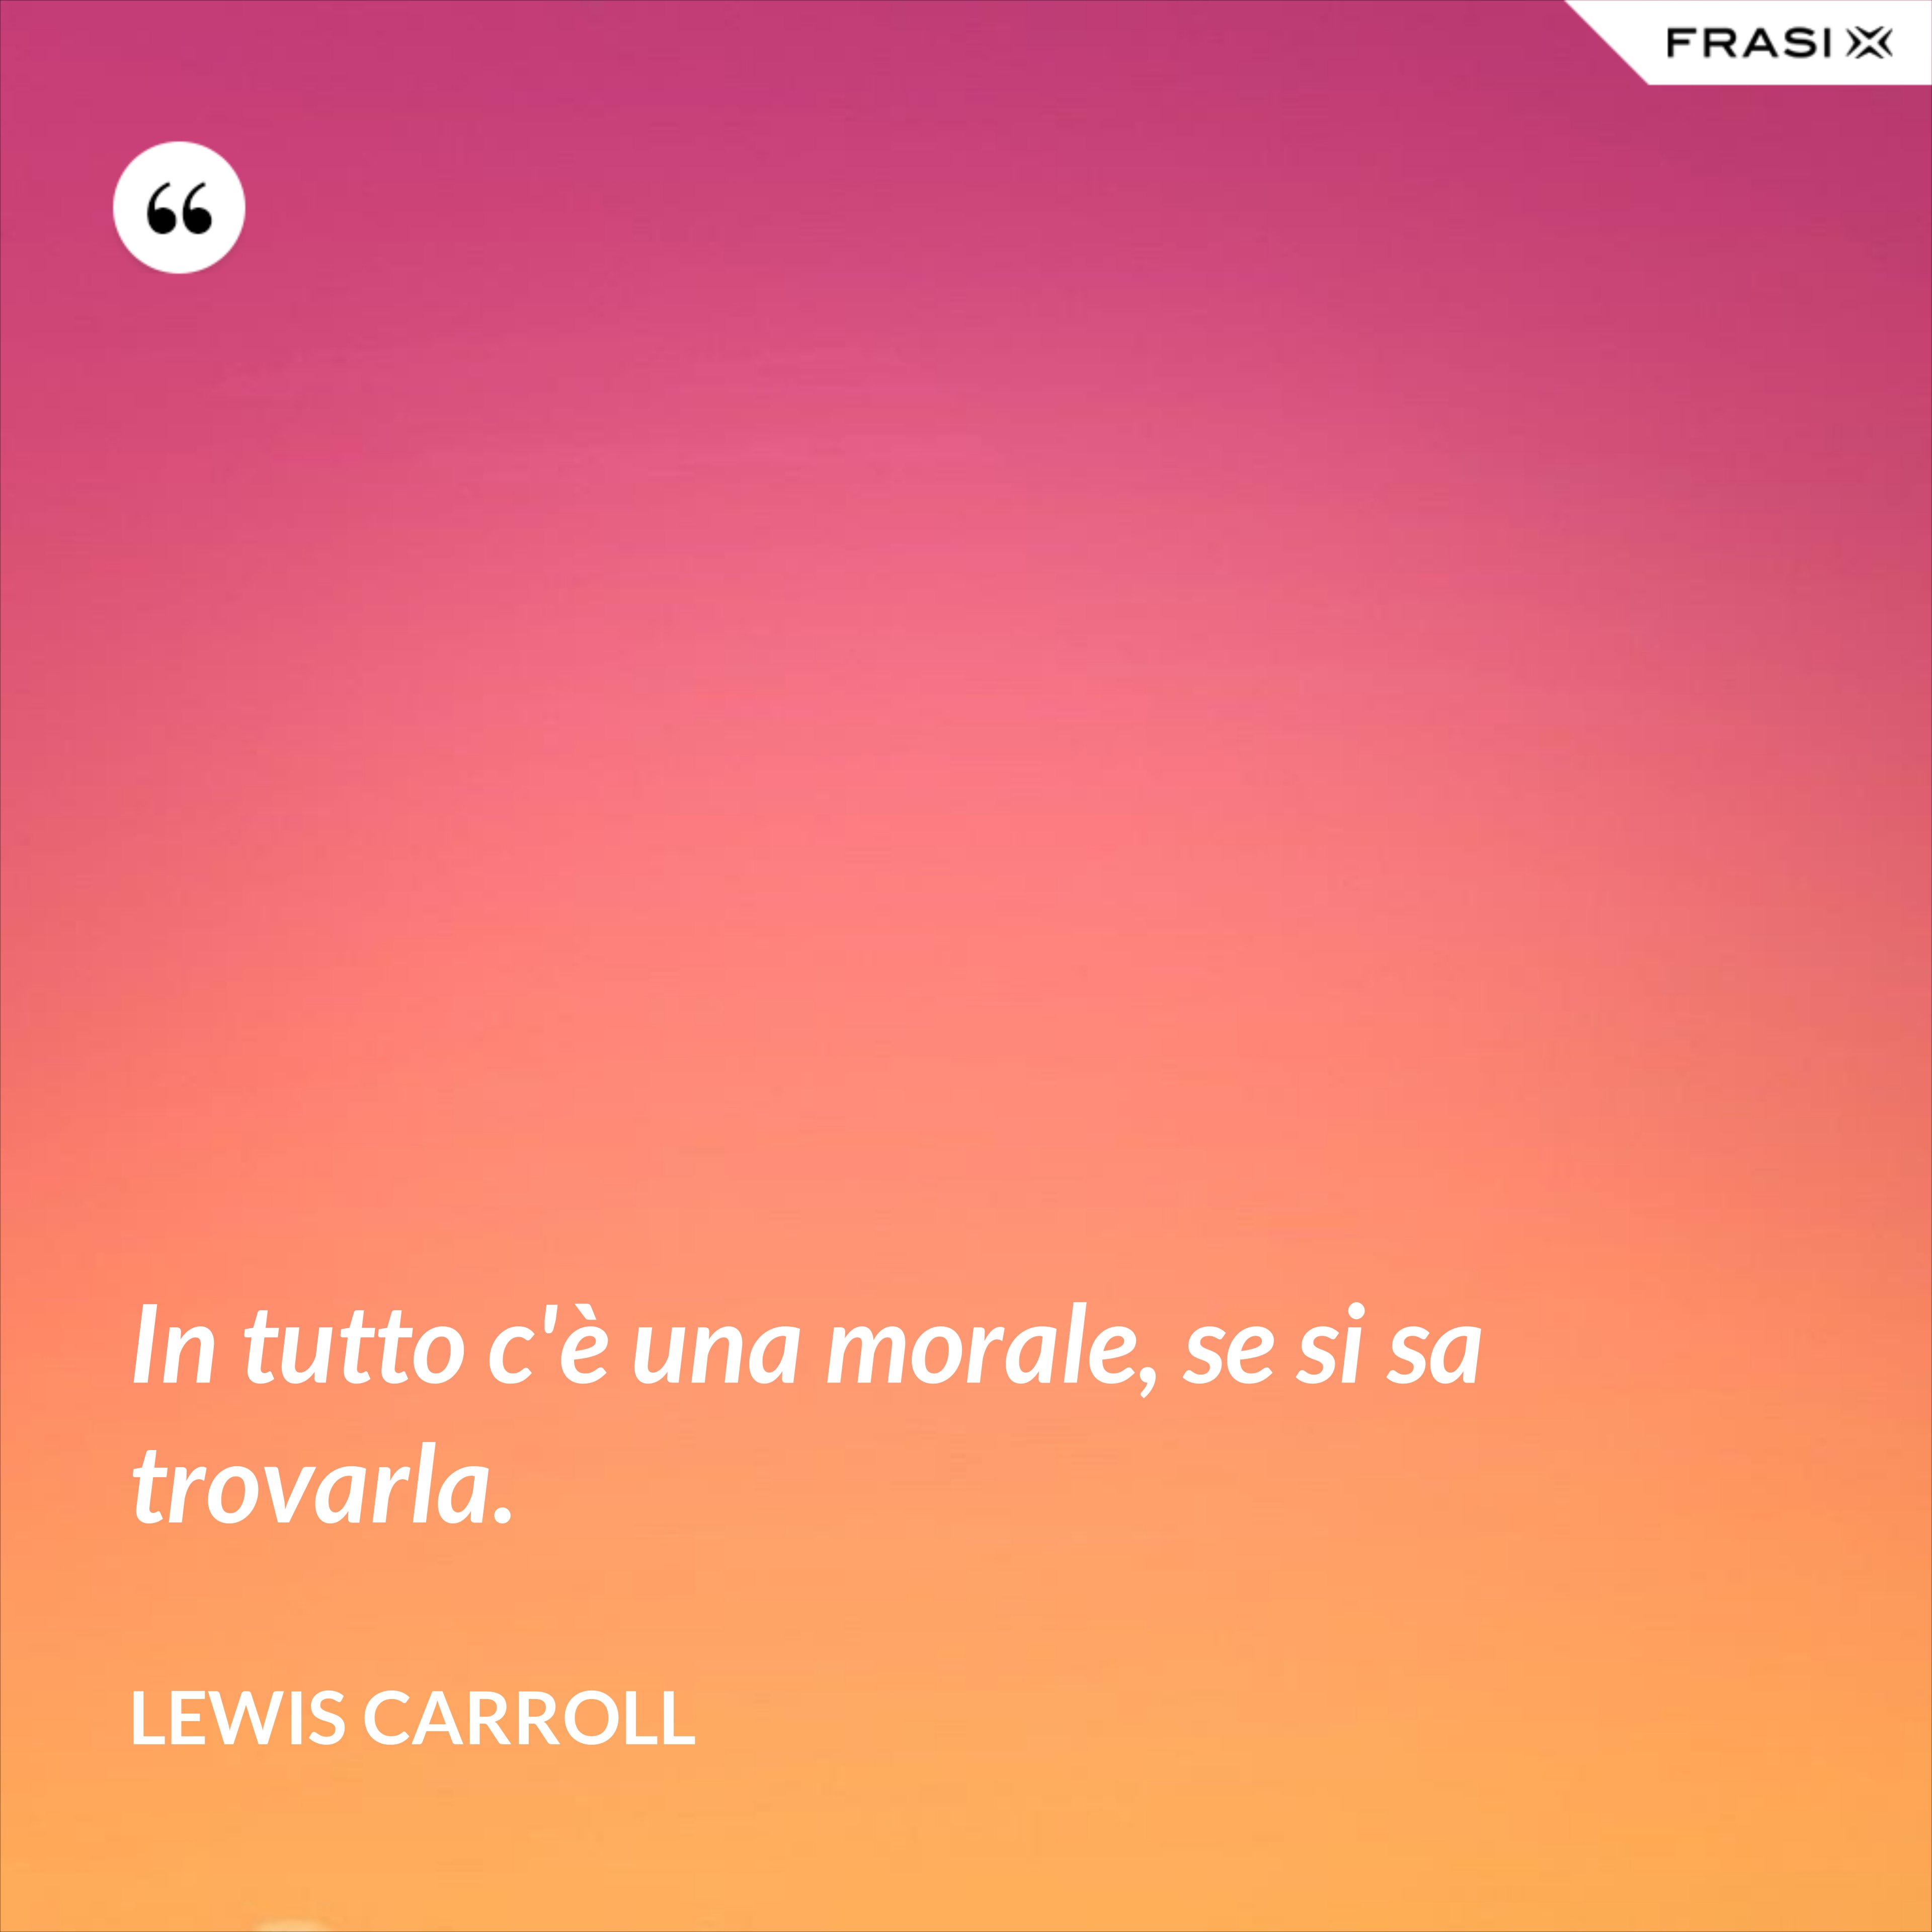 In tutto c'è una morale, se si sa trovarla. - Lewis Carroll